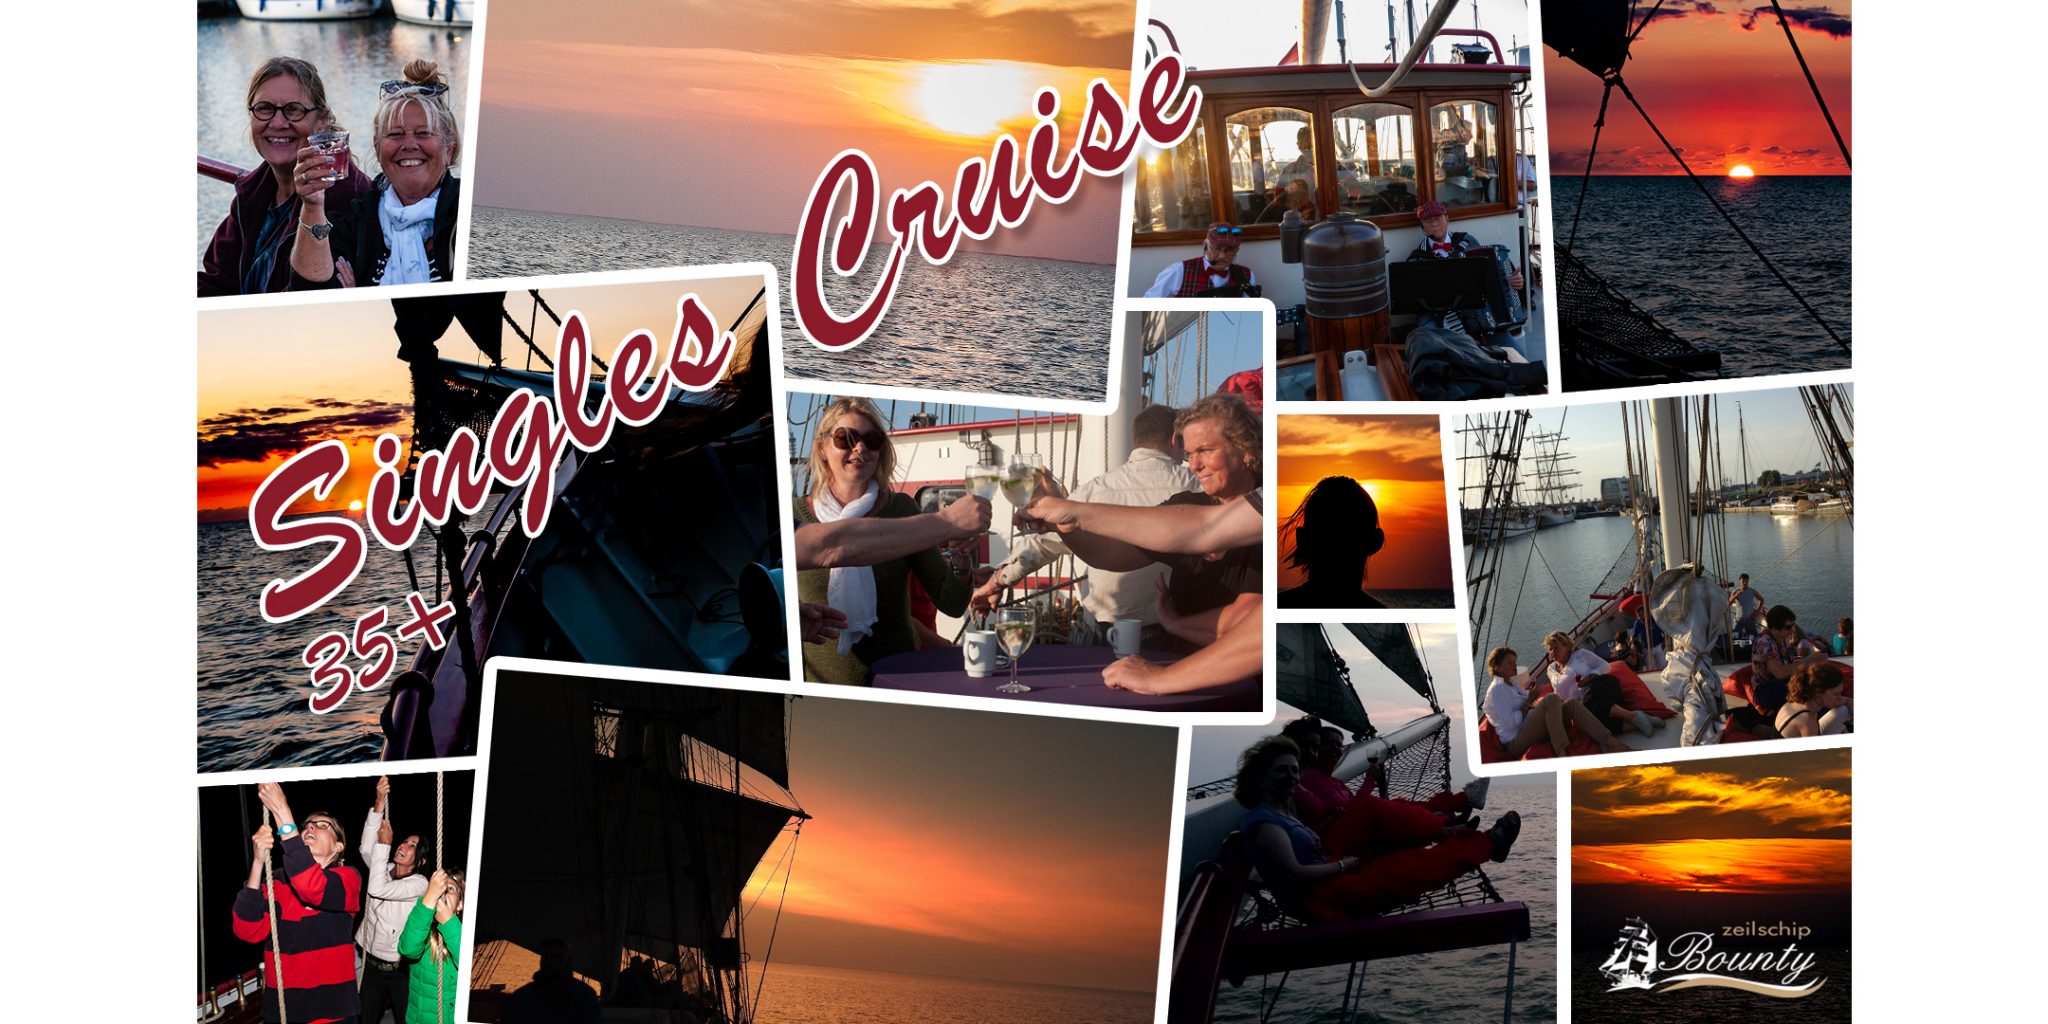 zeilschipbounty_collage sunset cruise singles